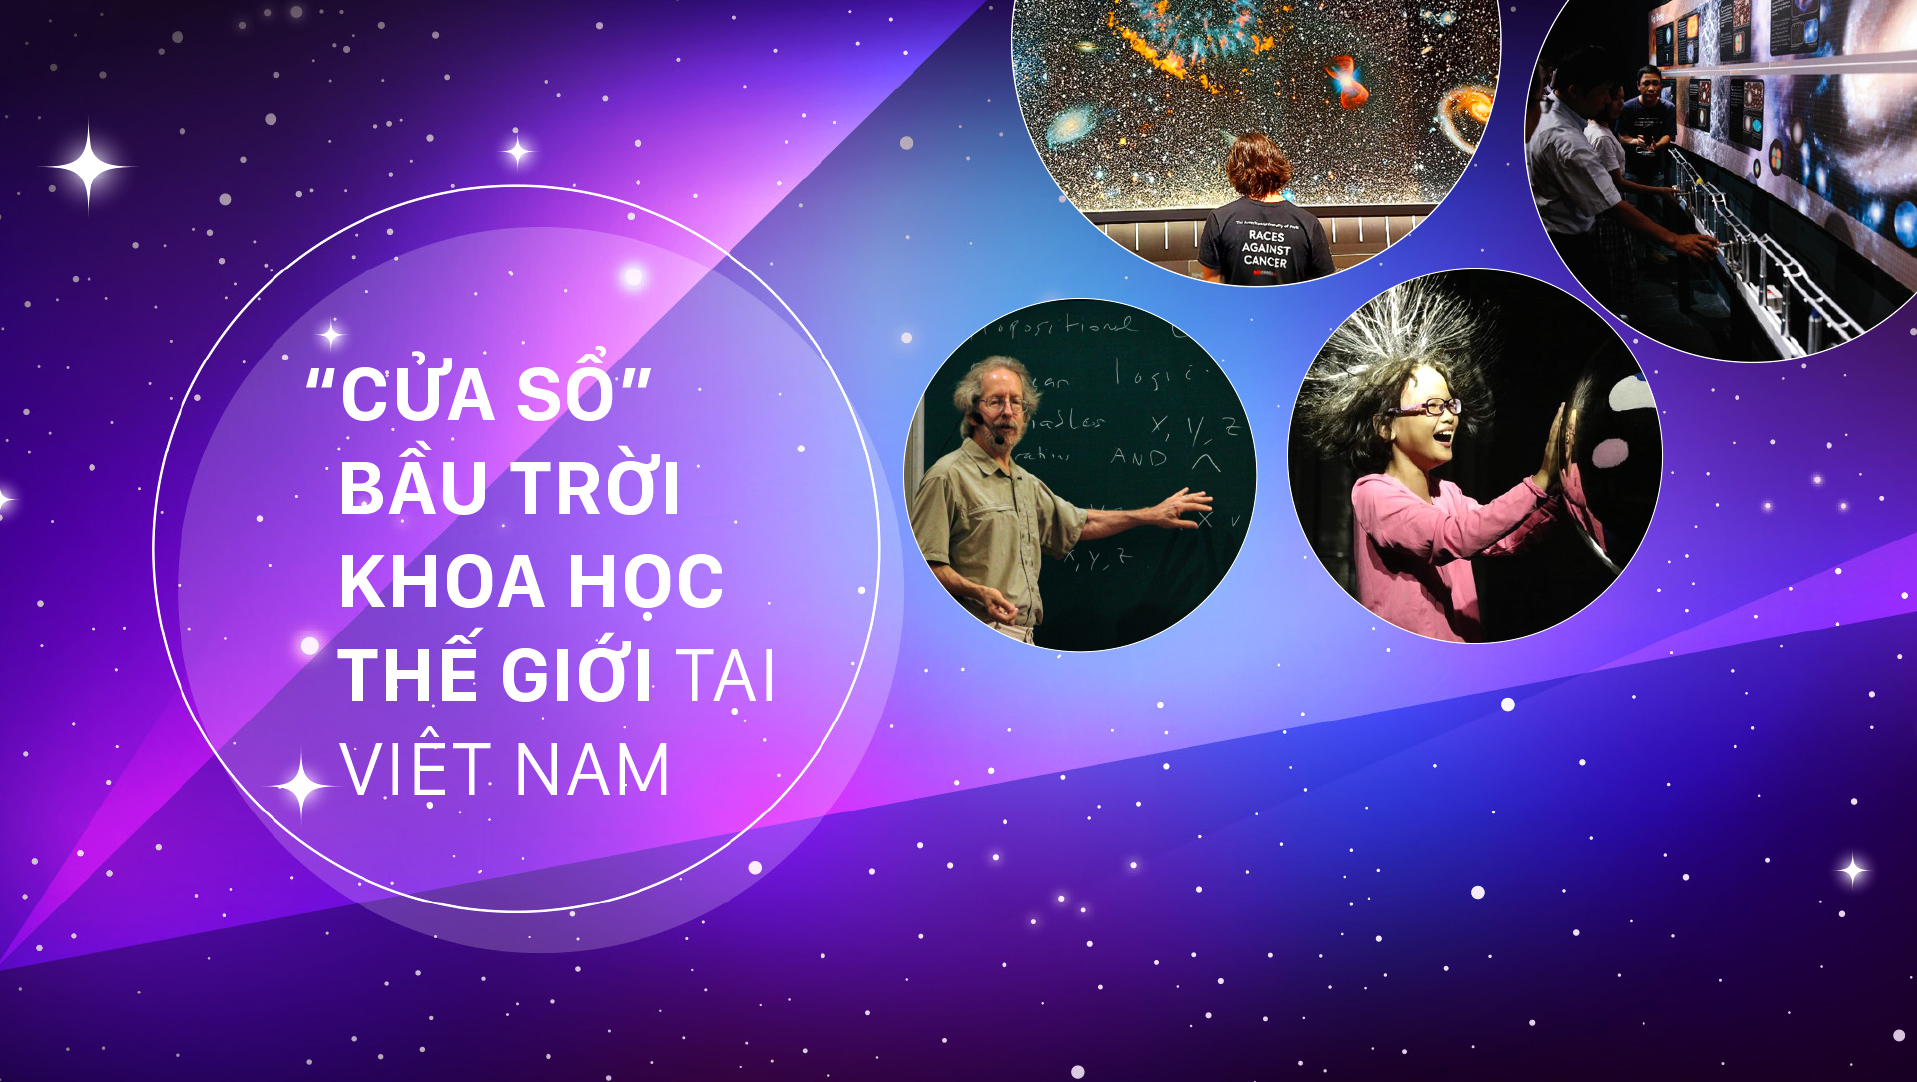 “Cửa sổ” bầu trời khoa học thế giới tại Việt Nam